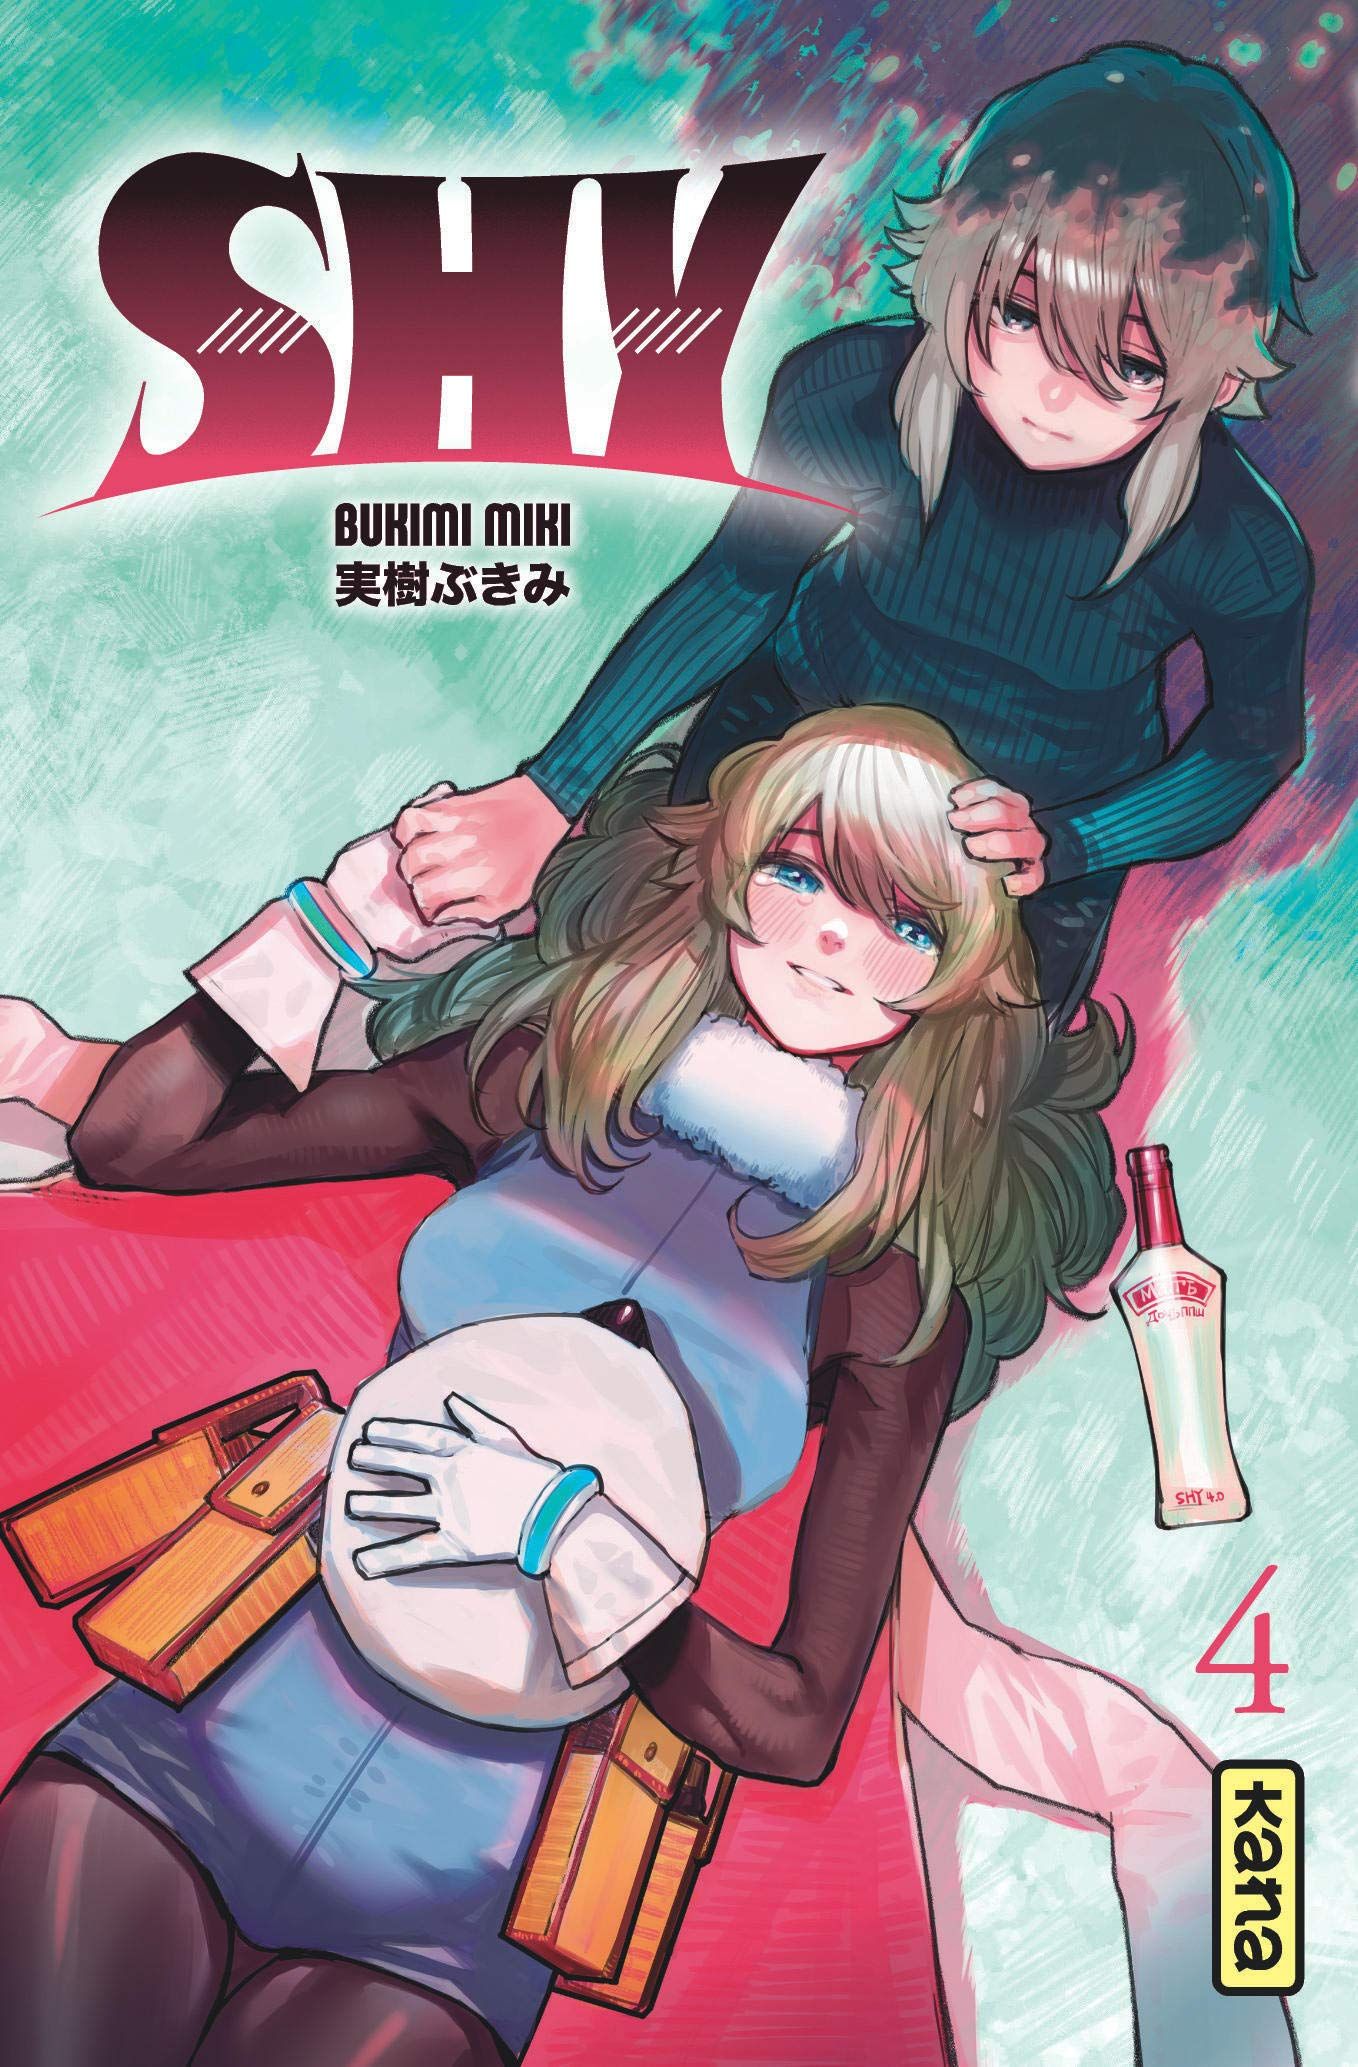 Sortie Manga au Québec JUIN 2021 Shy-4-kana